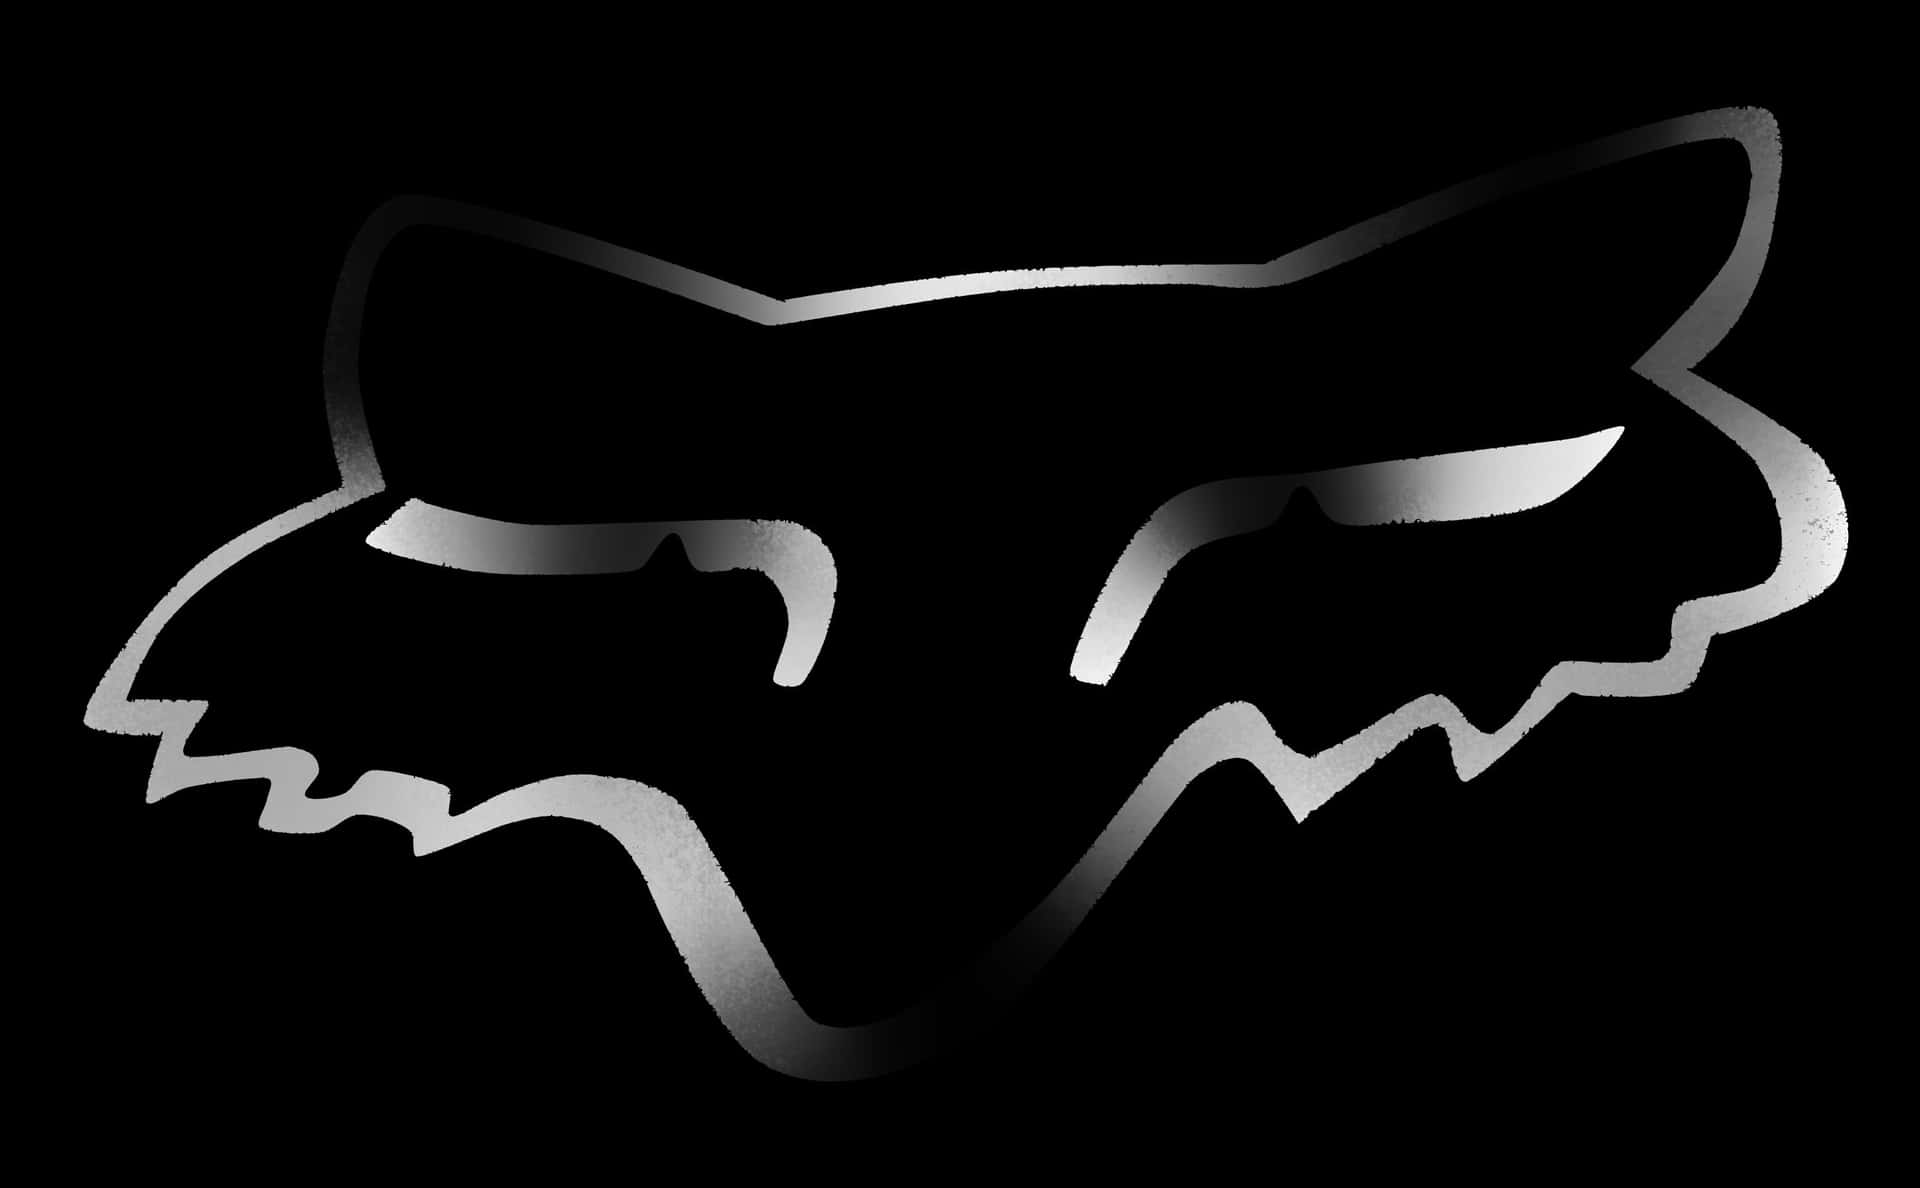 Det officielle logo for Fox Racing. Wallpaper